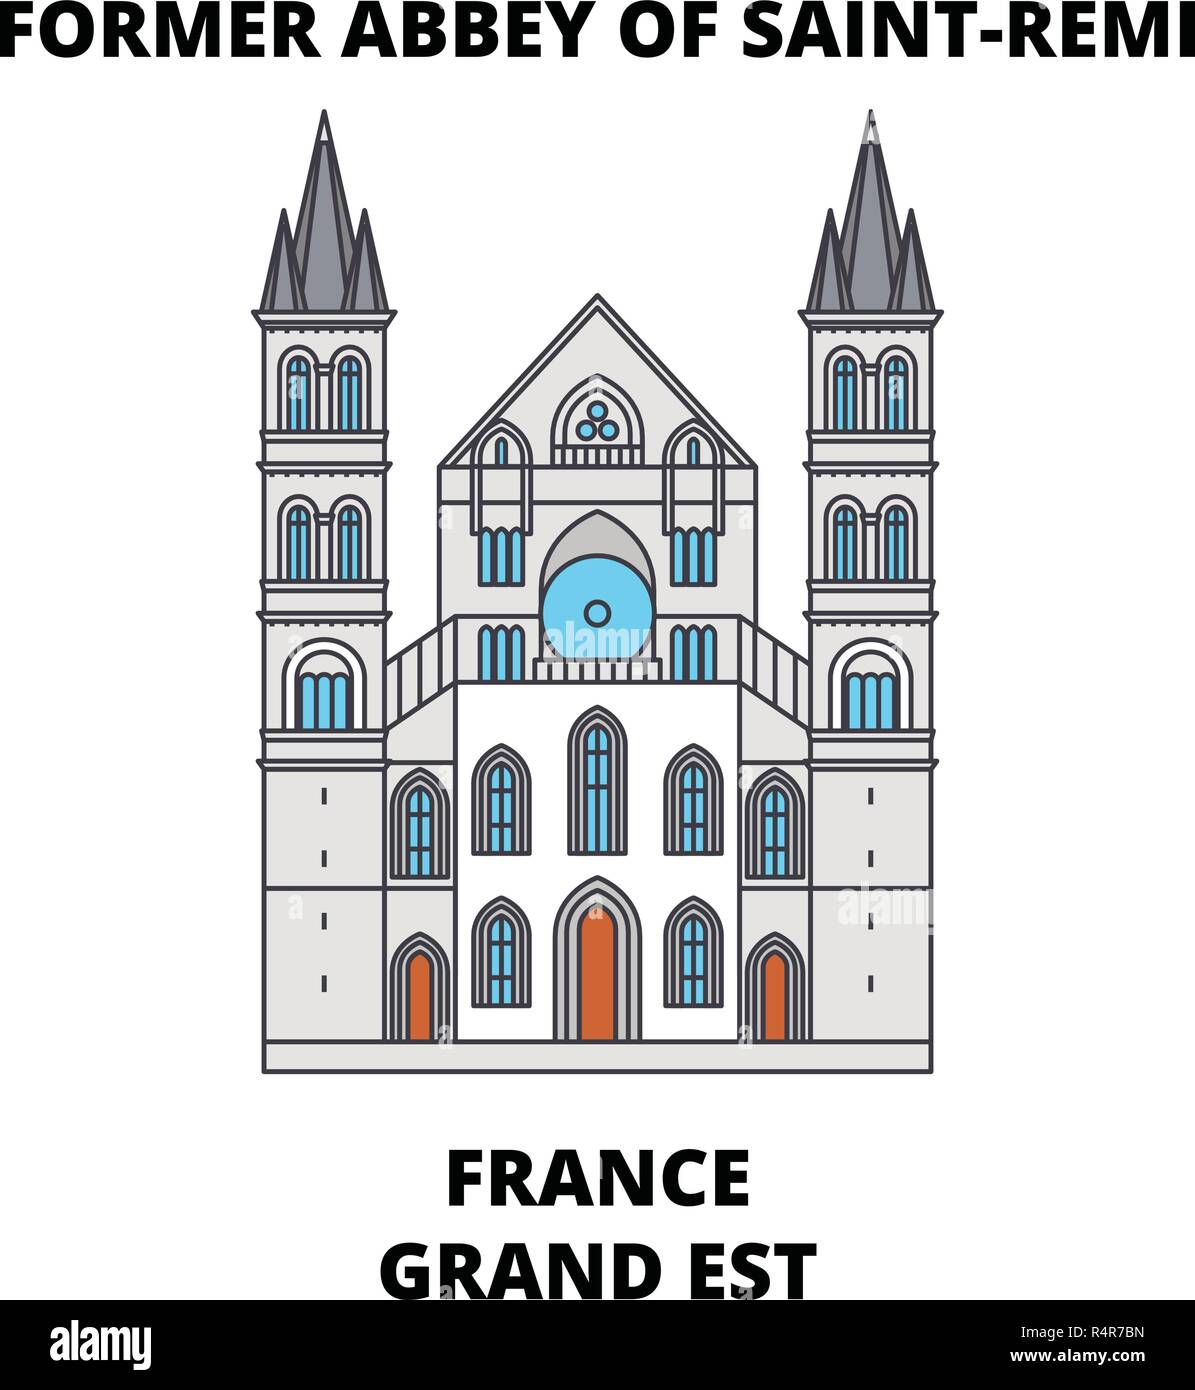 France, Grand Est - Former Abbey Of Saint-Remi line travel landmark, skyline, vector design. France, Grand Est - Former Abbey Of Saint-Remi linear illustration.  Stock Vector